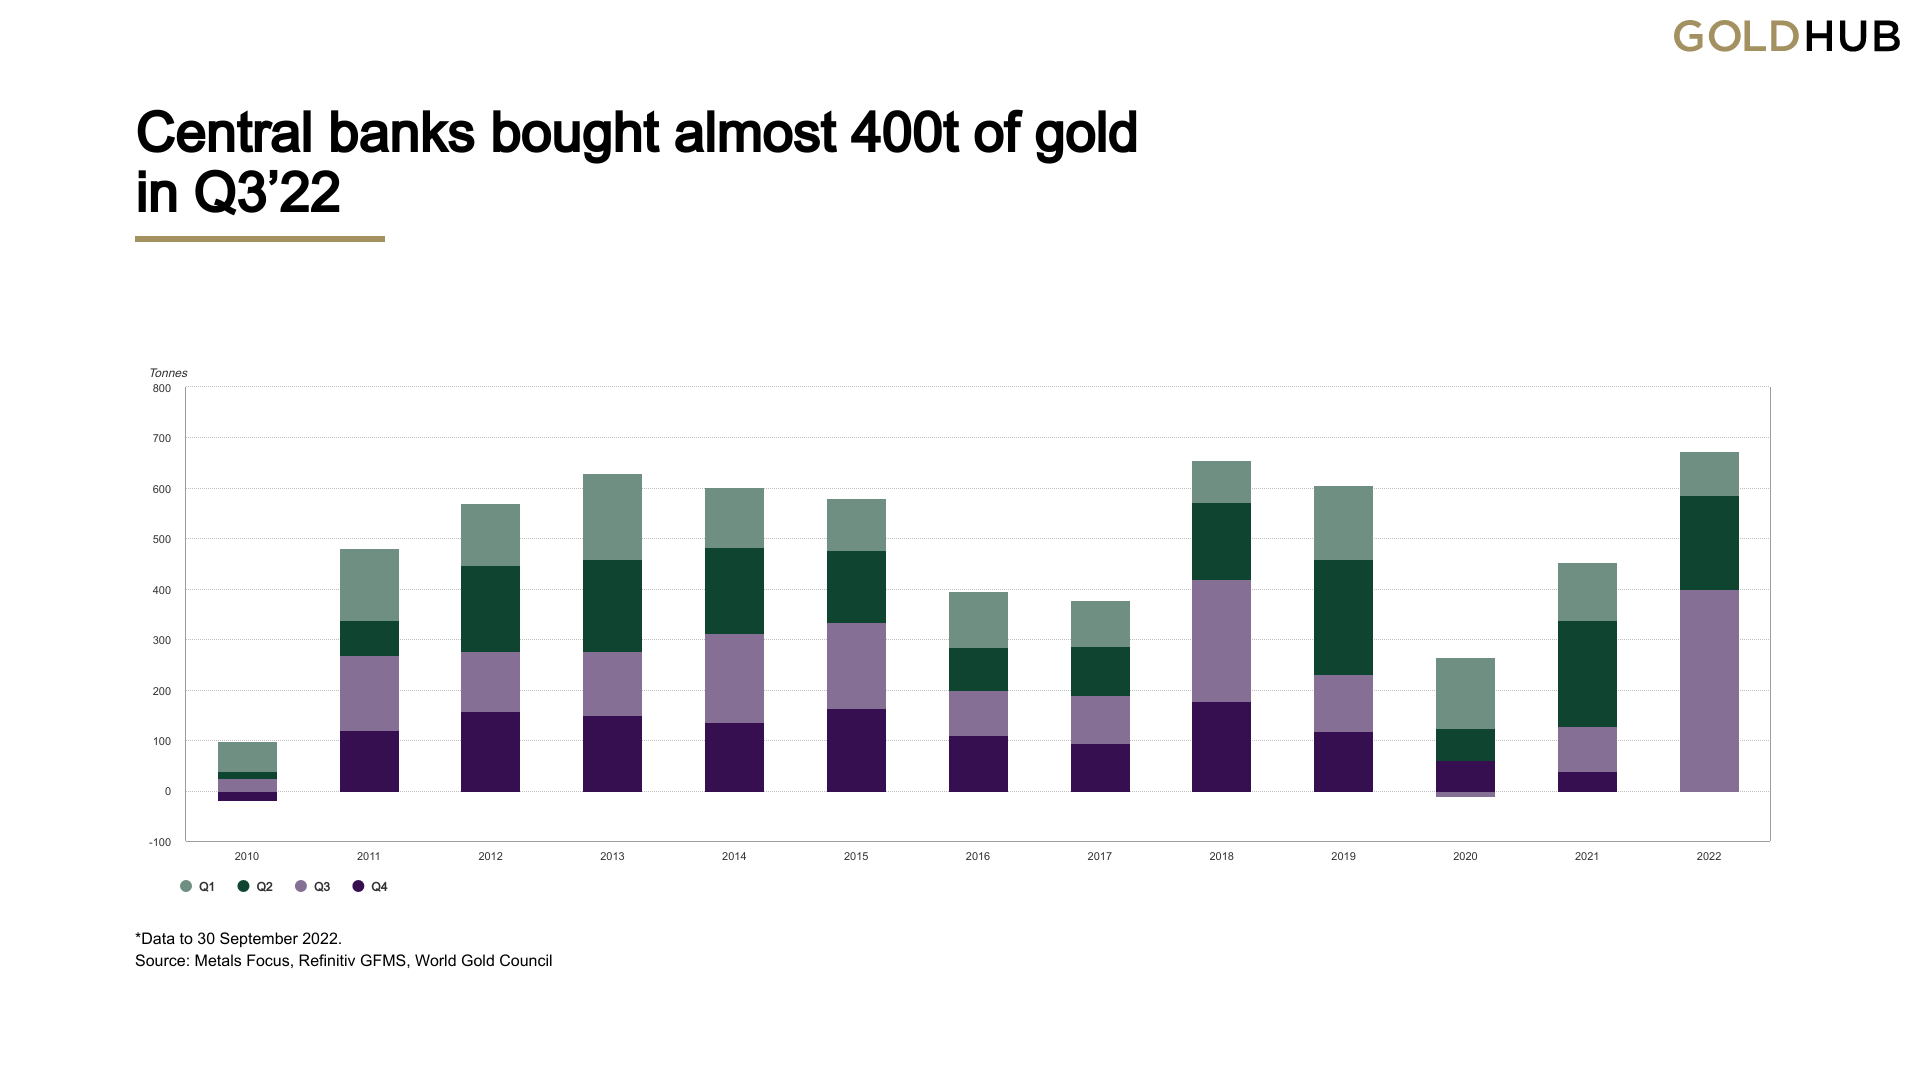 Las compras de oro del banco central este año alcanzan un máximo trimestral histórico en el tercer trimestre, 400 toneladas compradas es la 'mayor cantidad registrada'